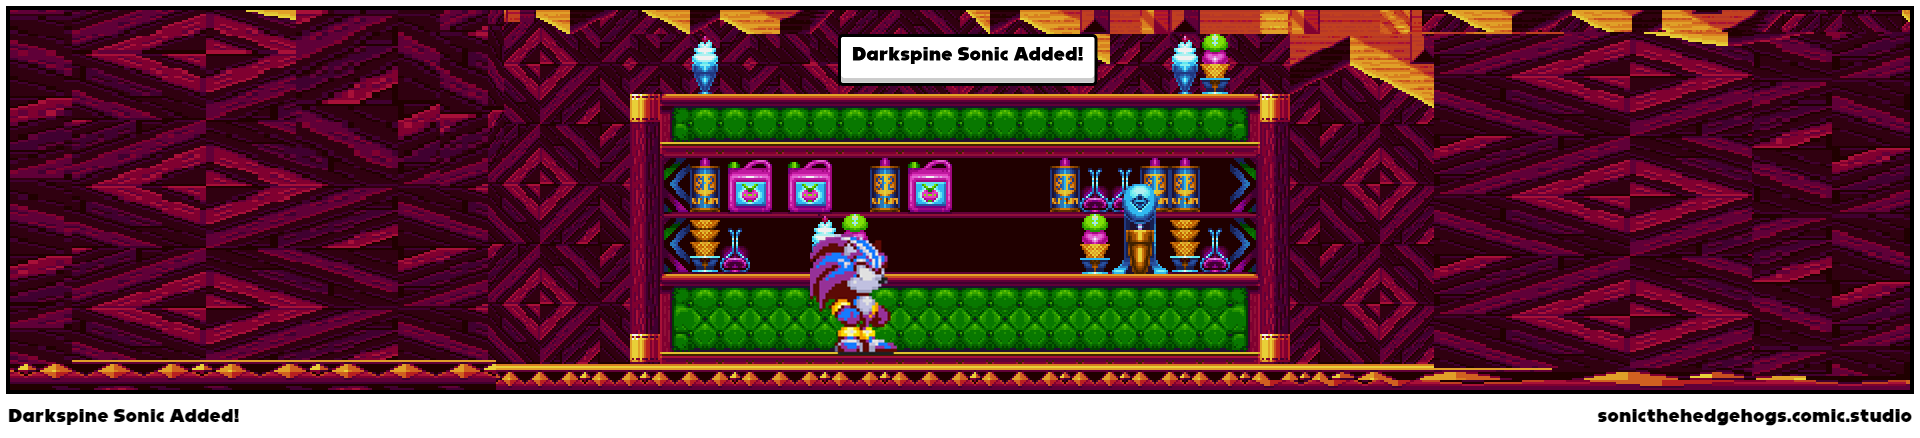 Darkspine Sonic Added!